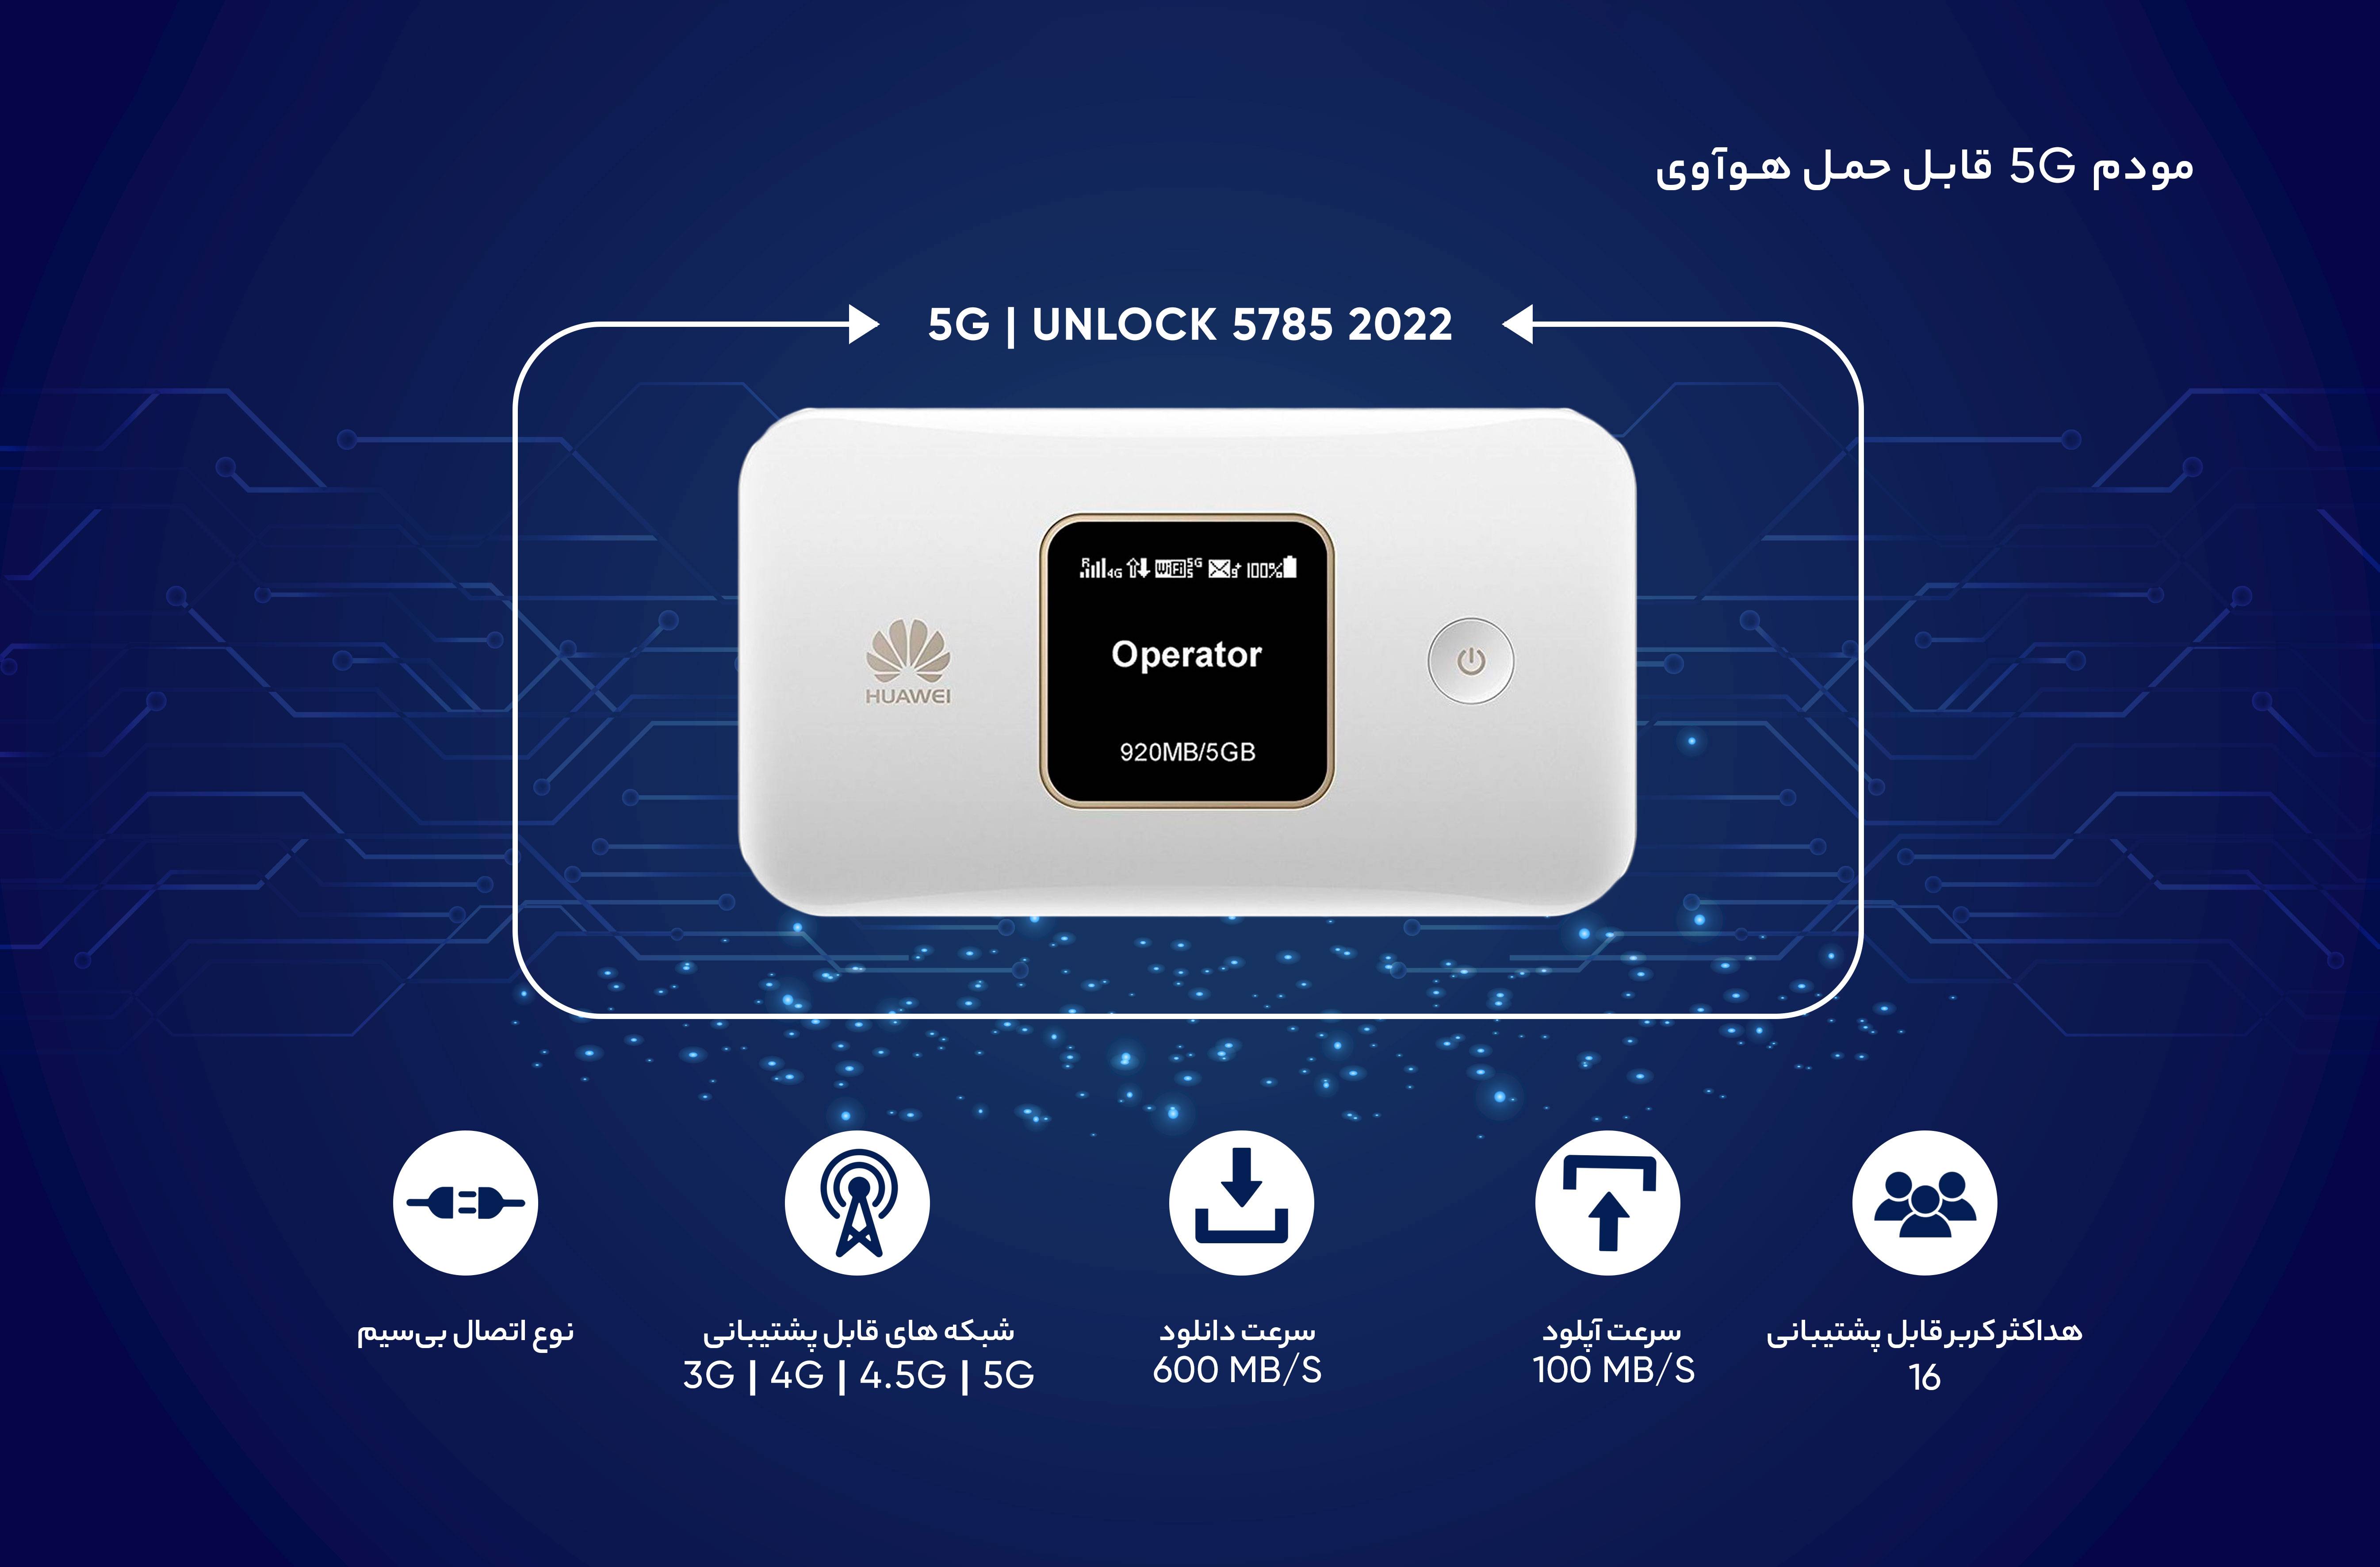 مودم 5G قابل حمل هوآوی مدل Unlock 5785 2022 - d69dee2bd5232d3ee33f91e9c9a5cca8